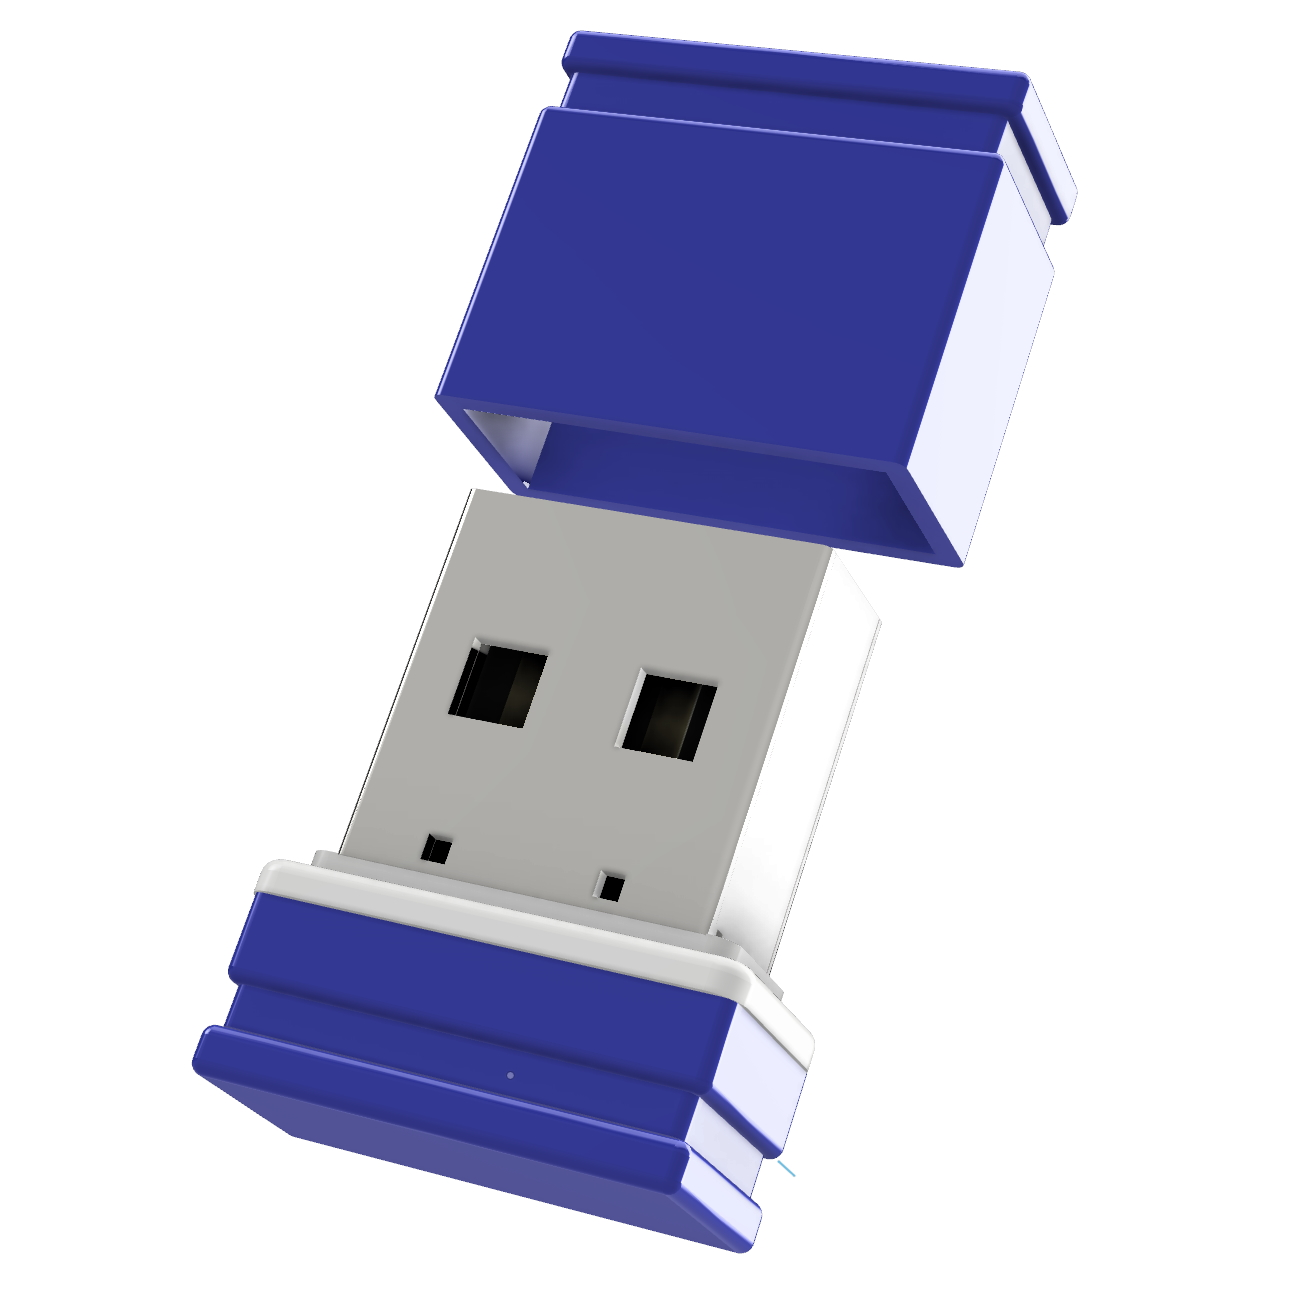 USB-Stick (Blau/Weiss, USB GB) ®ULTRA P1 Mini GERMANY 32